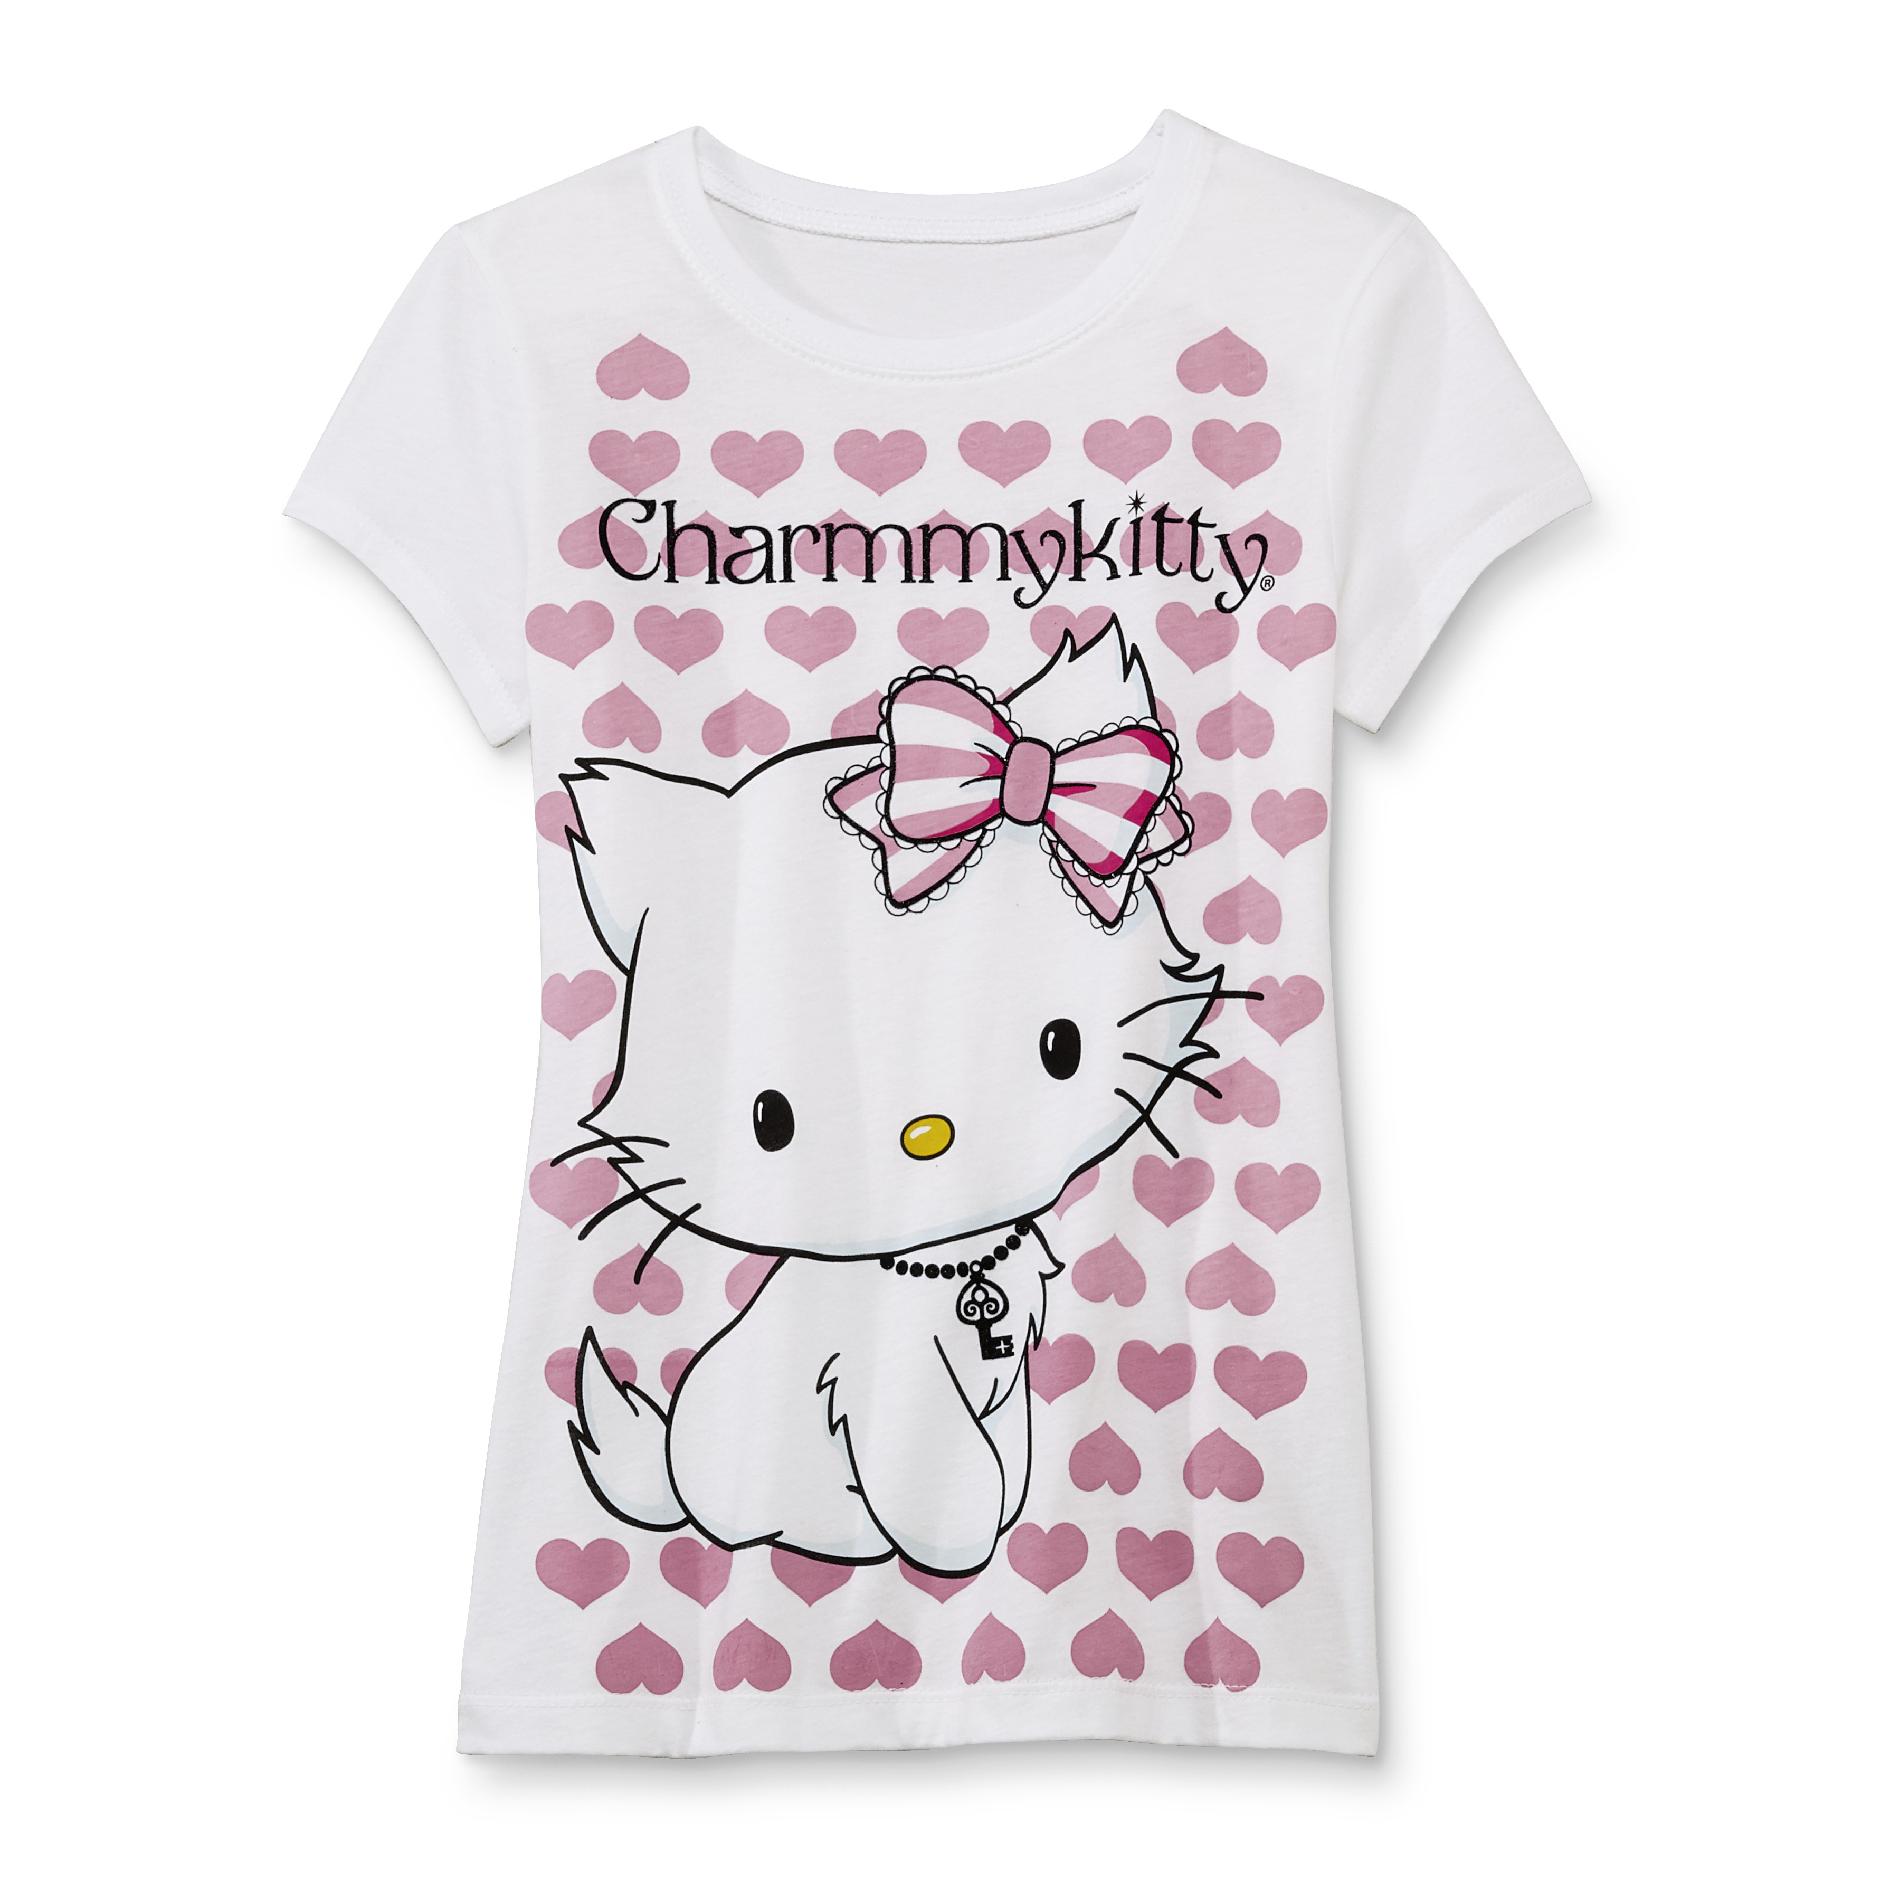 Sanrio Charmmykitty Girl's Graphic T-Shirt